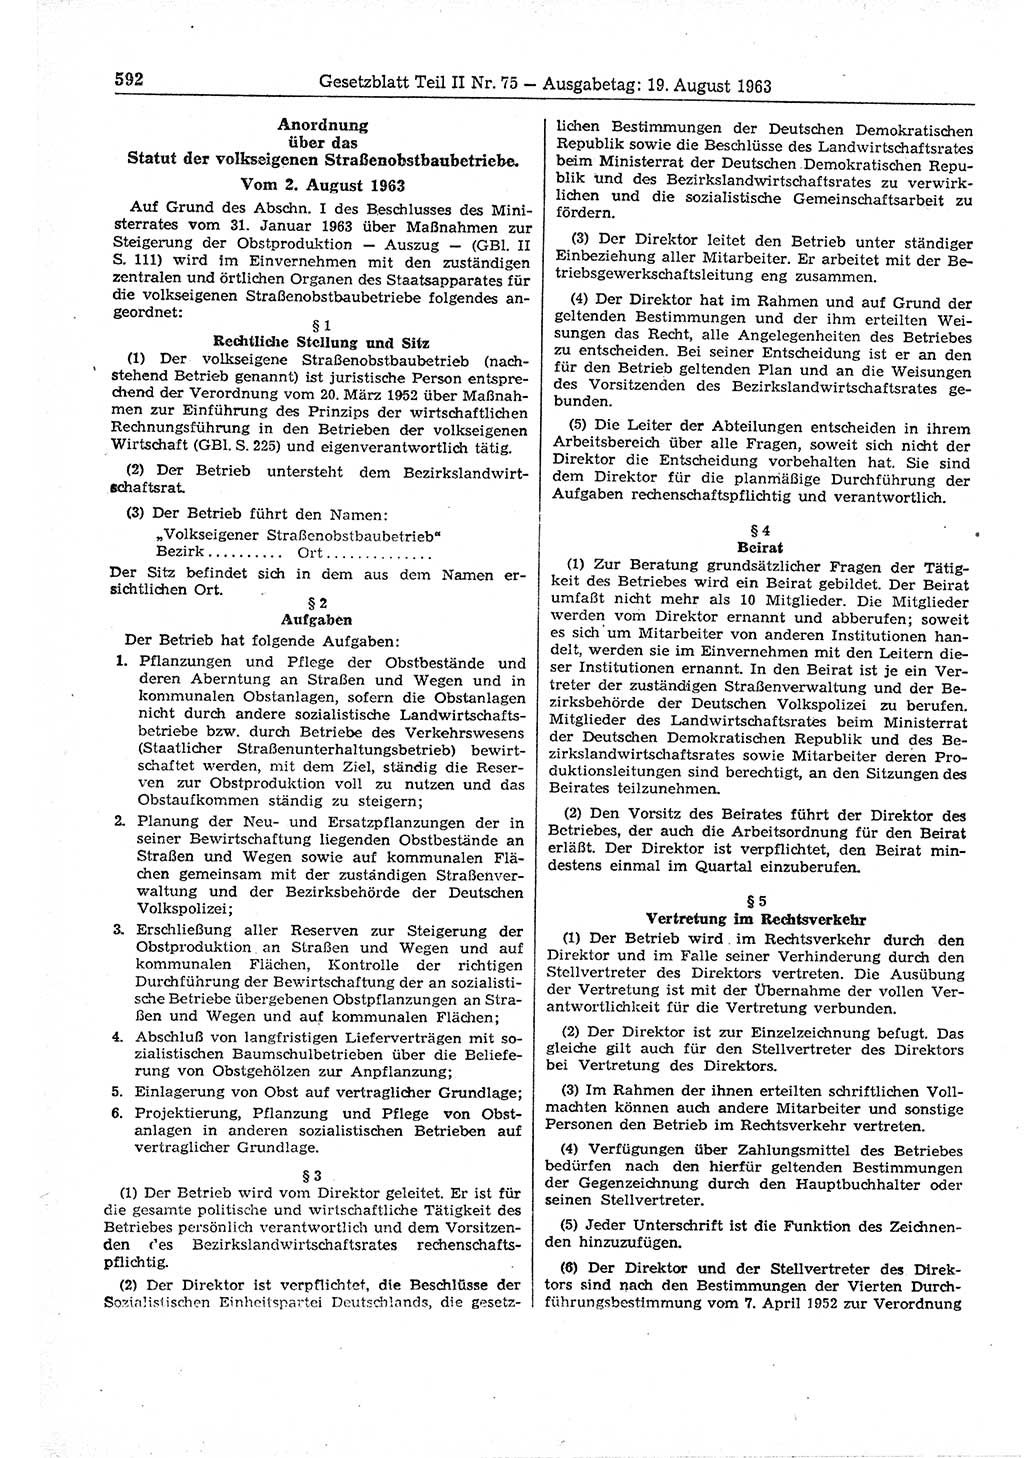 Gesetzblatt (GBl.) der Deutschen Demokratischen Republik (DDR) Teil ⅠⅠ 1963, Seite 592 (GBl. DDR ⅠⅠ 1963, S. 592)